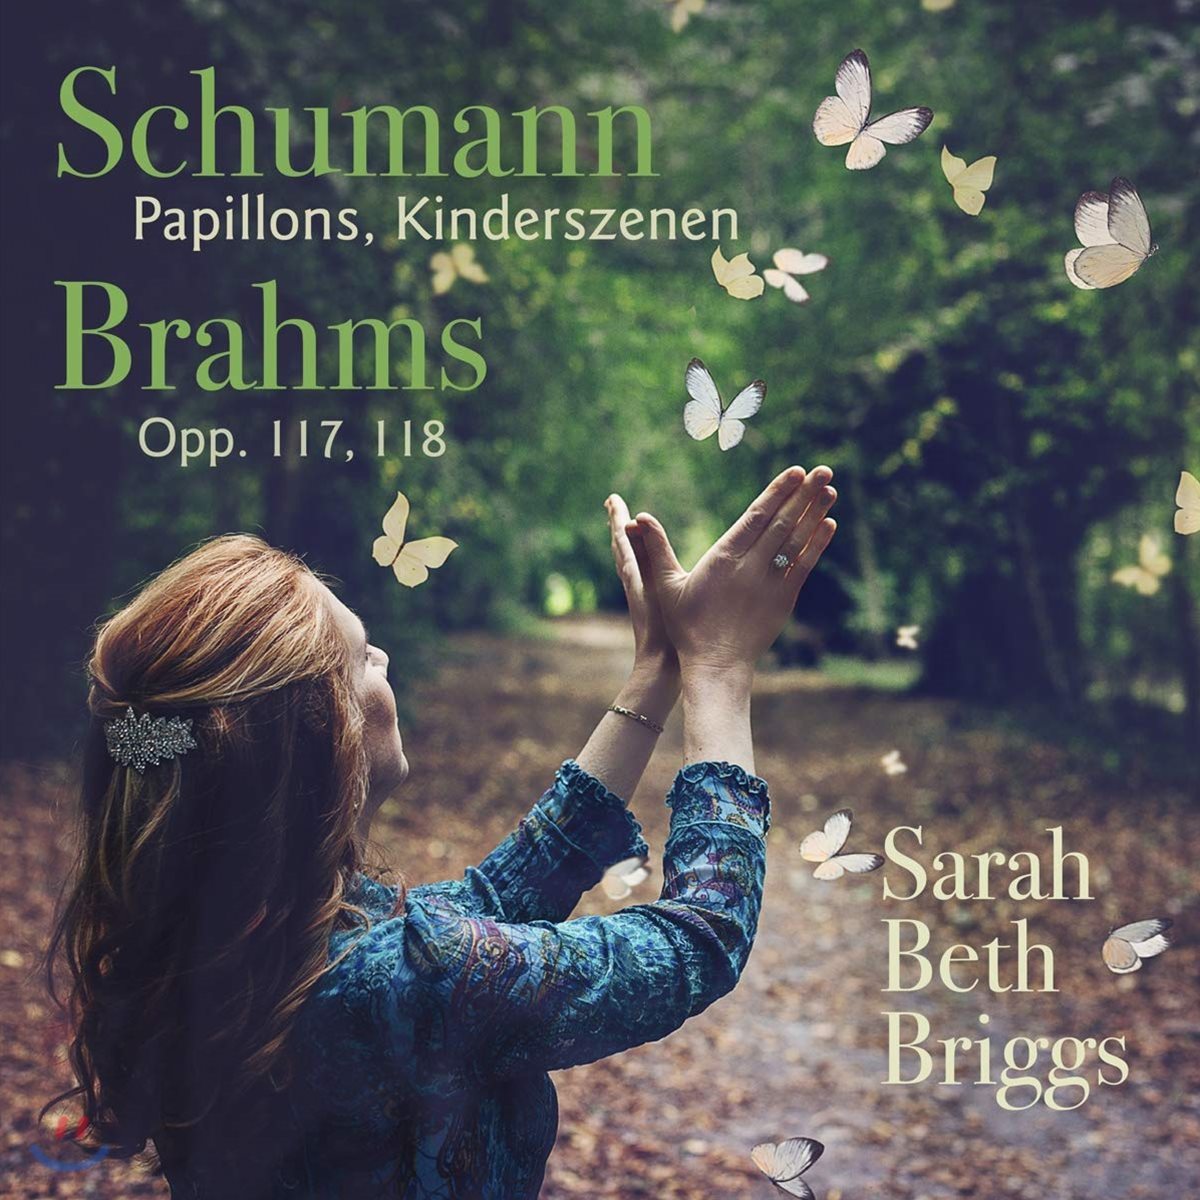 Sarah Beth Briggs 슈만: 나비, 어린이 정경 / 브람스: 인터메초, 피아노 소품집 (Schumann: Papillons Op. 2, Kinderszenen Op. 15 / Brahms: Opp. 117, 118)